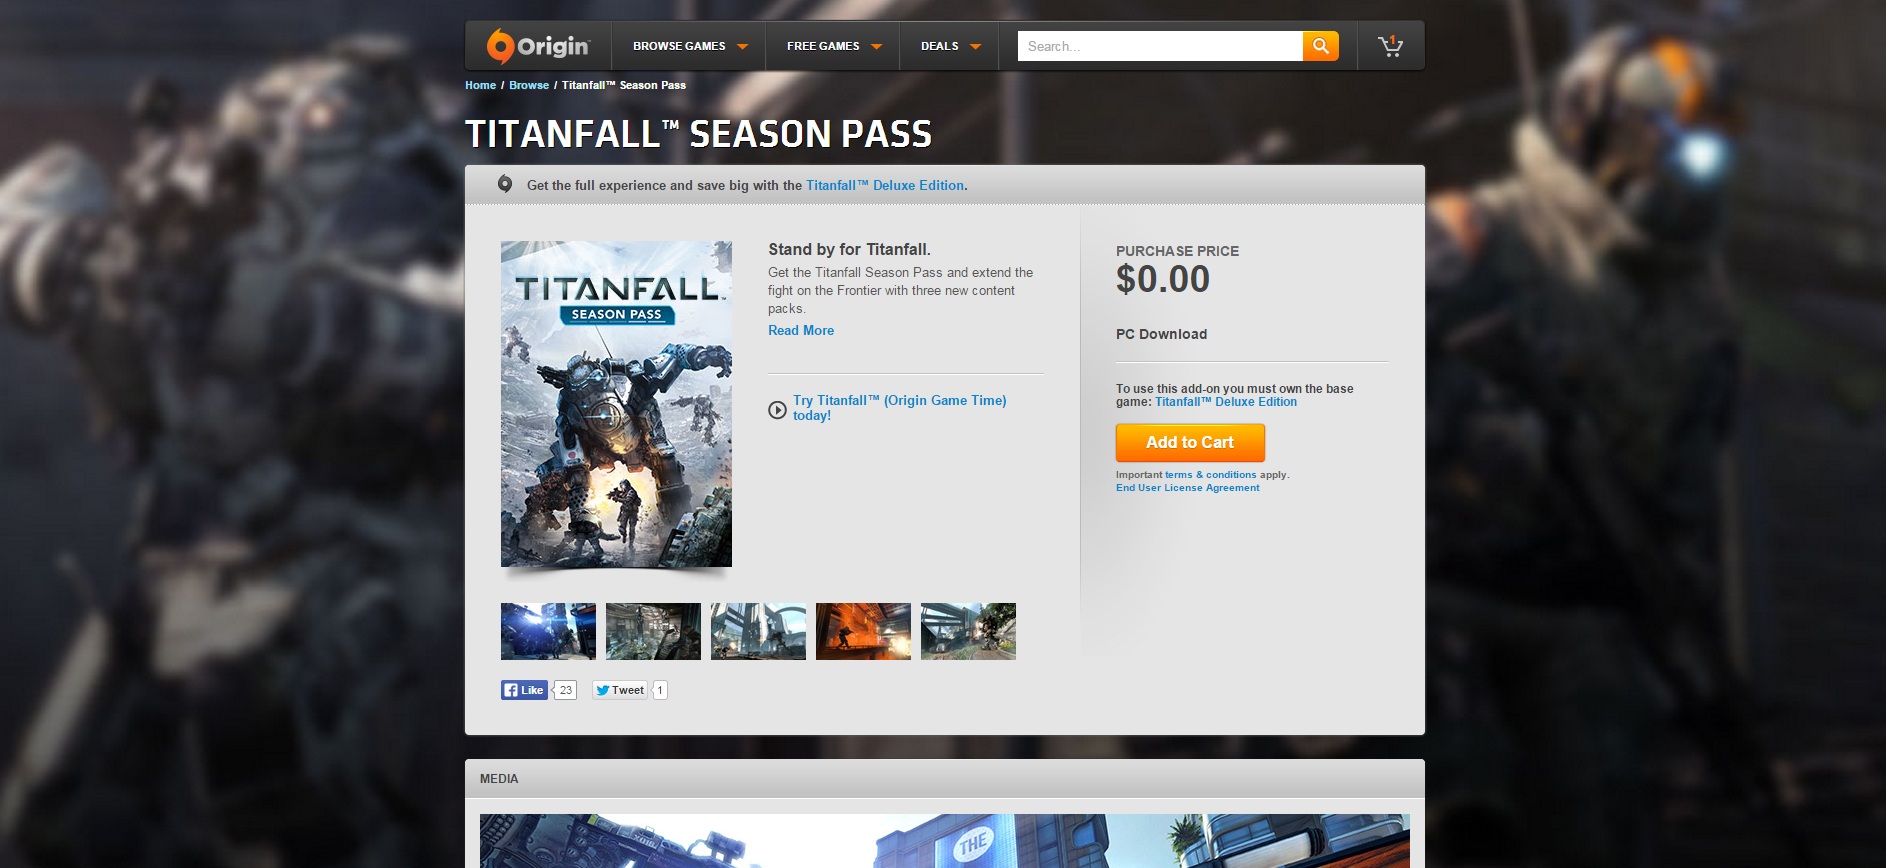 Hướng dẫn lấy miễn phí gói Season Pass của game Titanfall